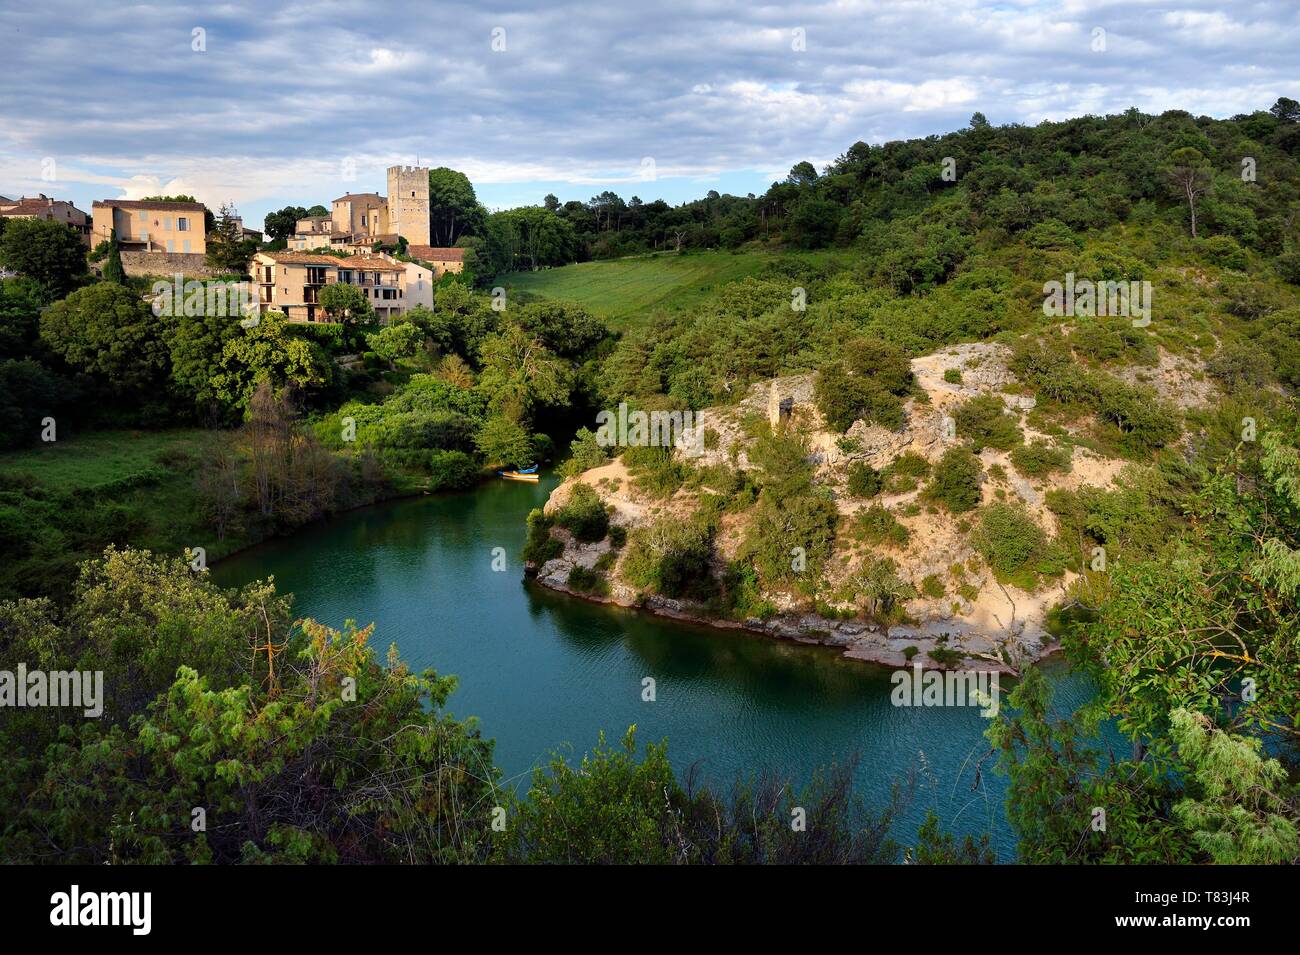 France, Alpes de Haute Provence, Parc Naturel Régional du Verdon, basses gorges du Verdon, Esparron de Verdon, le château appartient toujours à la famille de Castellane Banque D'Images